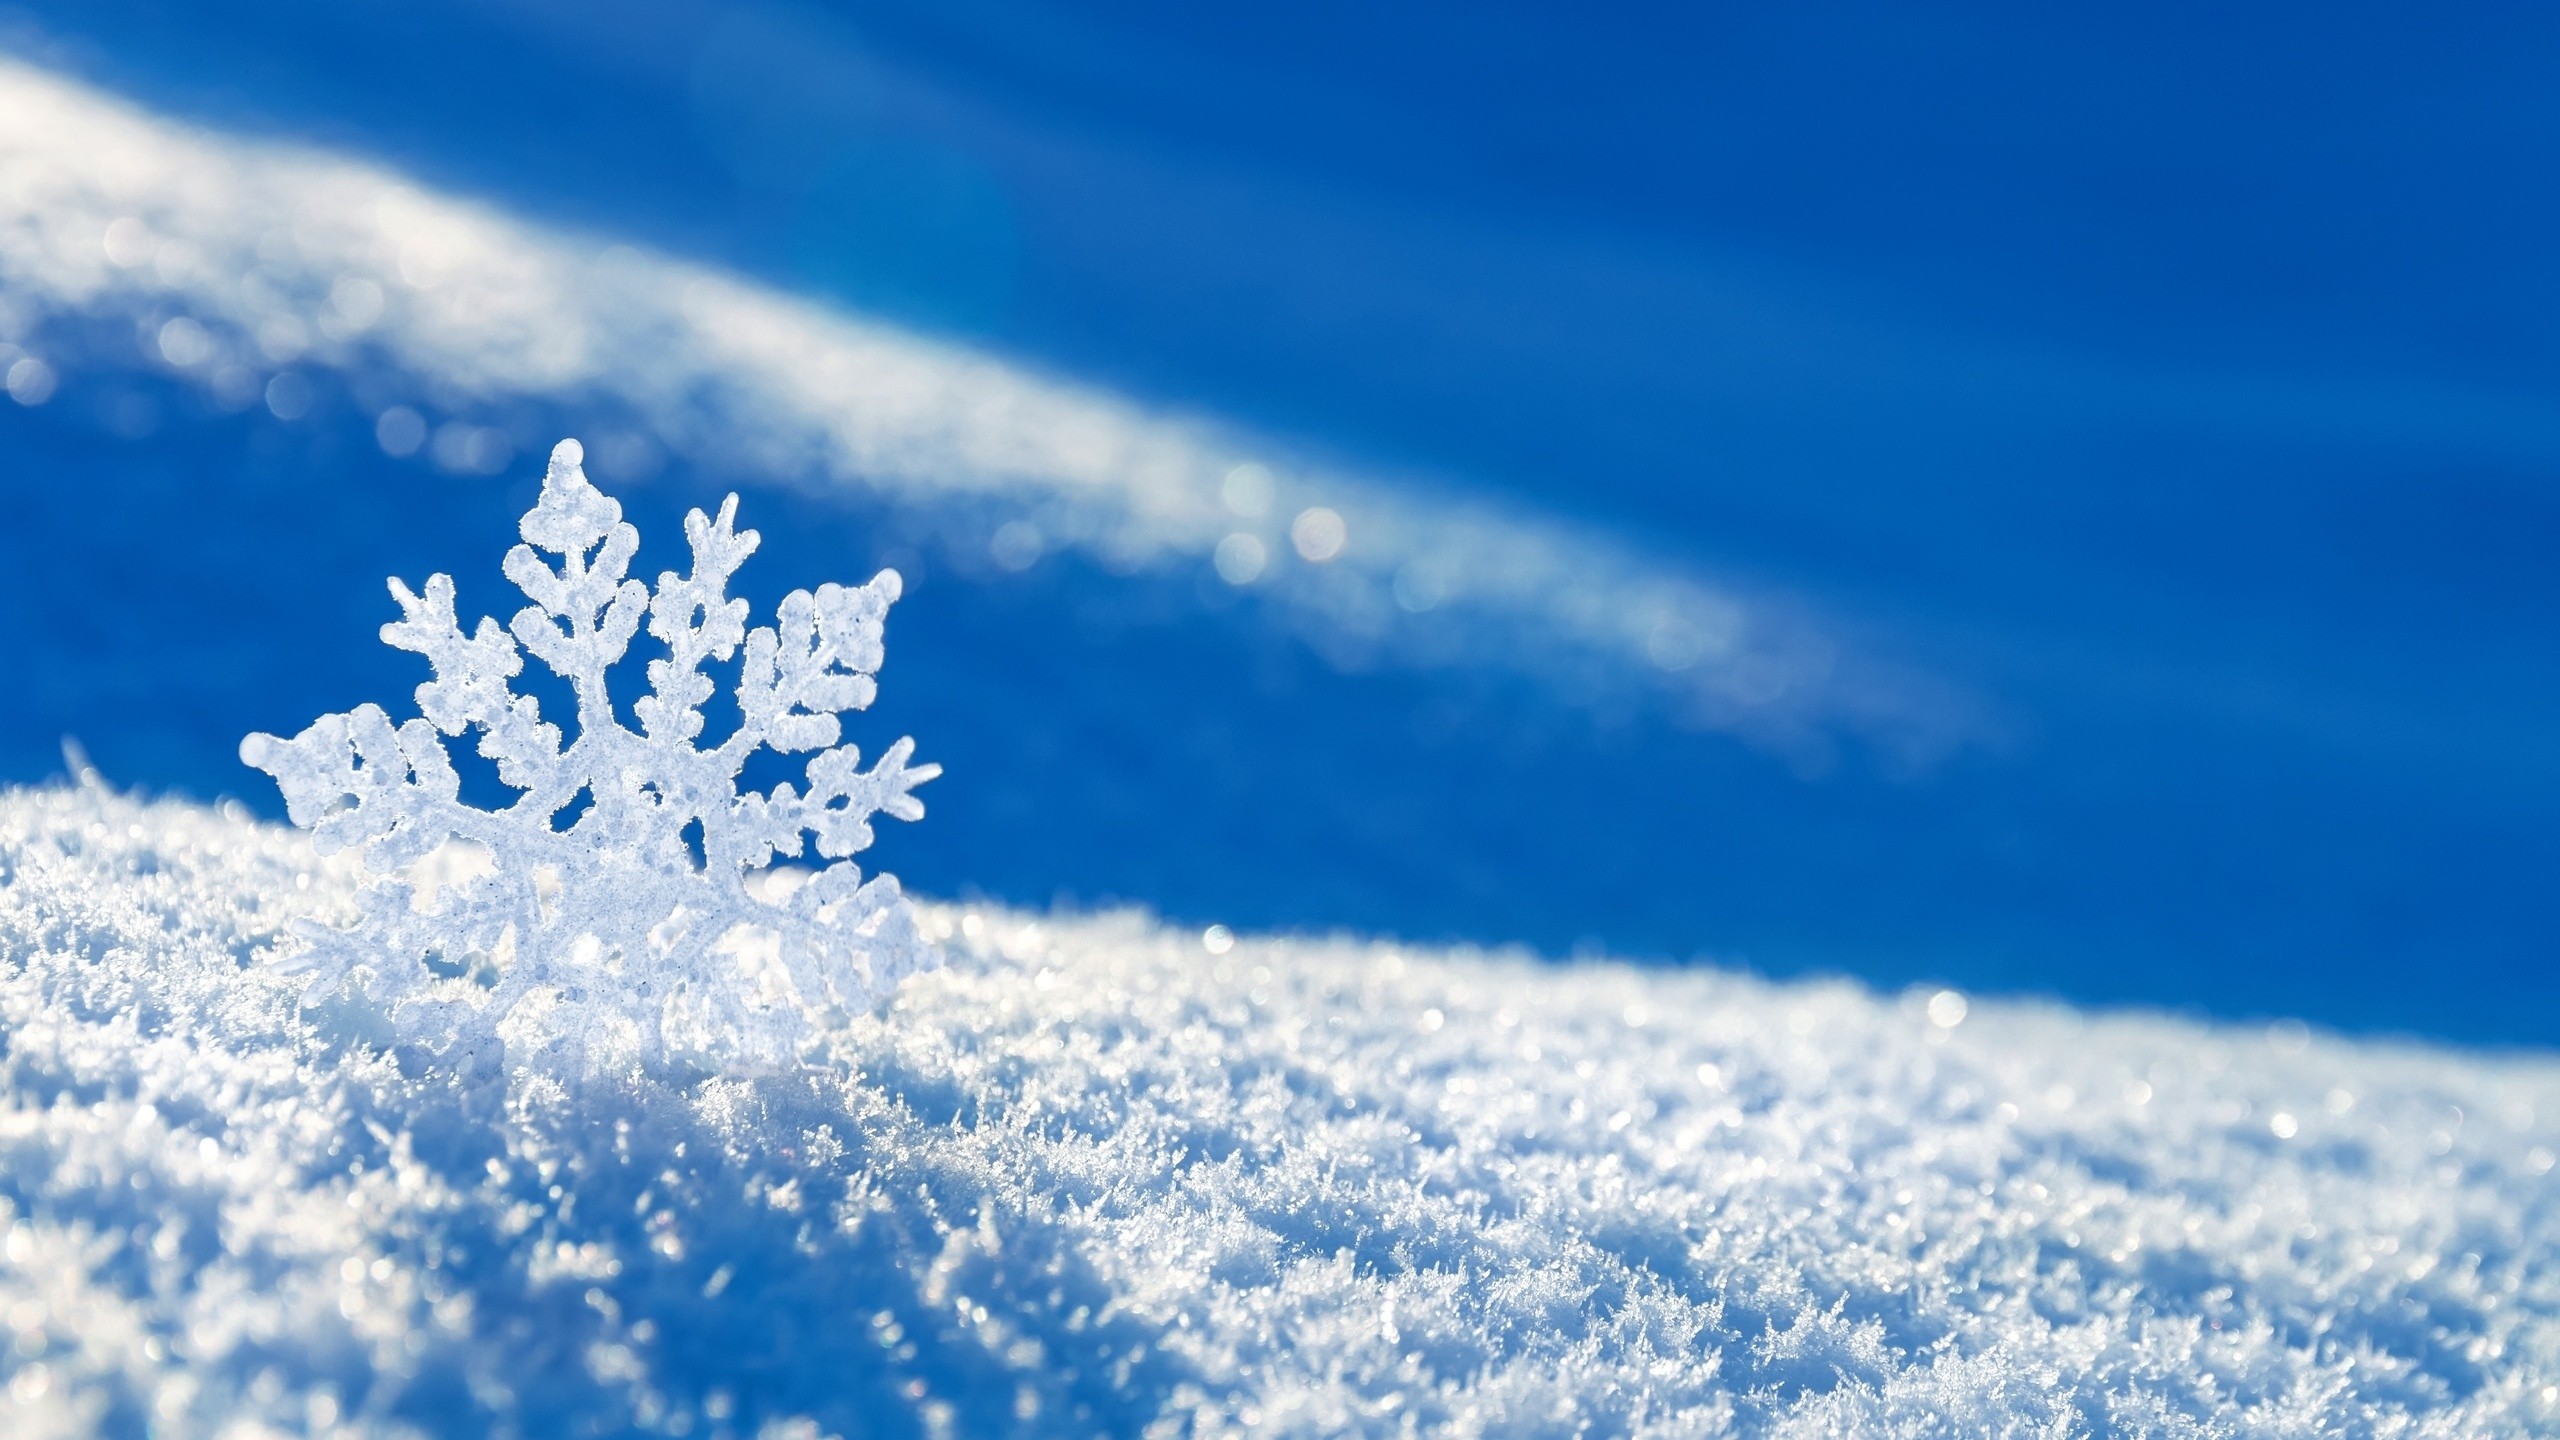 2560x1440 Wallpaper  Snow Snowflake Winter Mac Imac 27